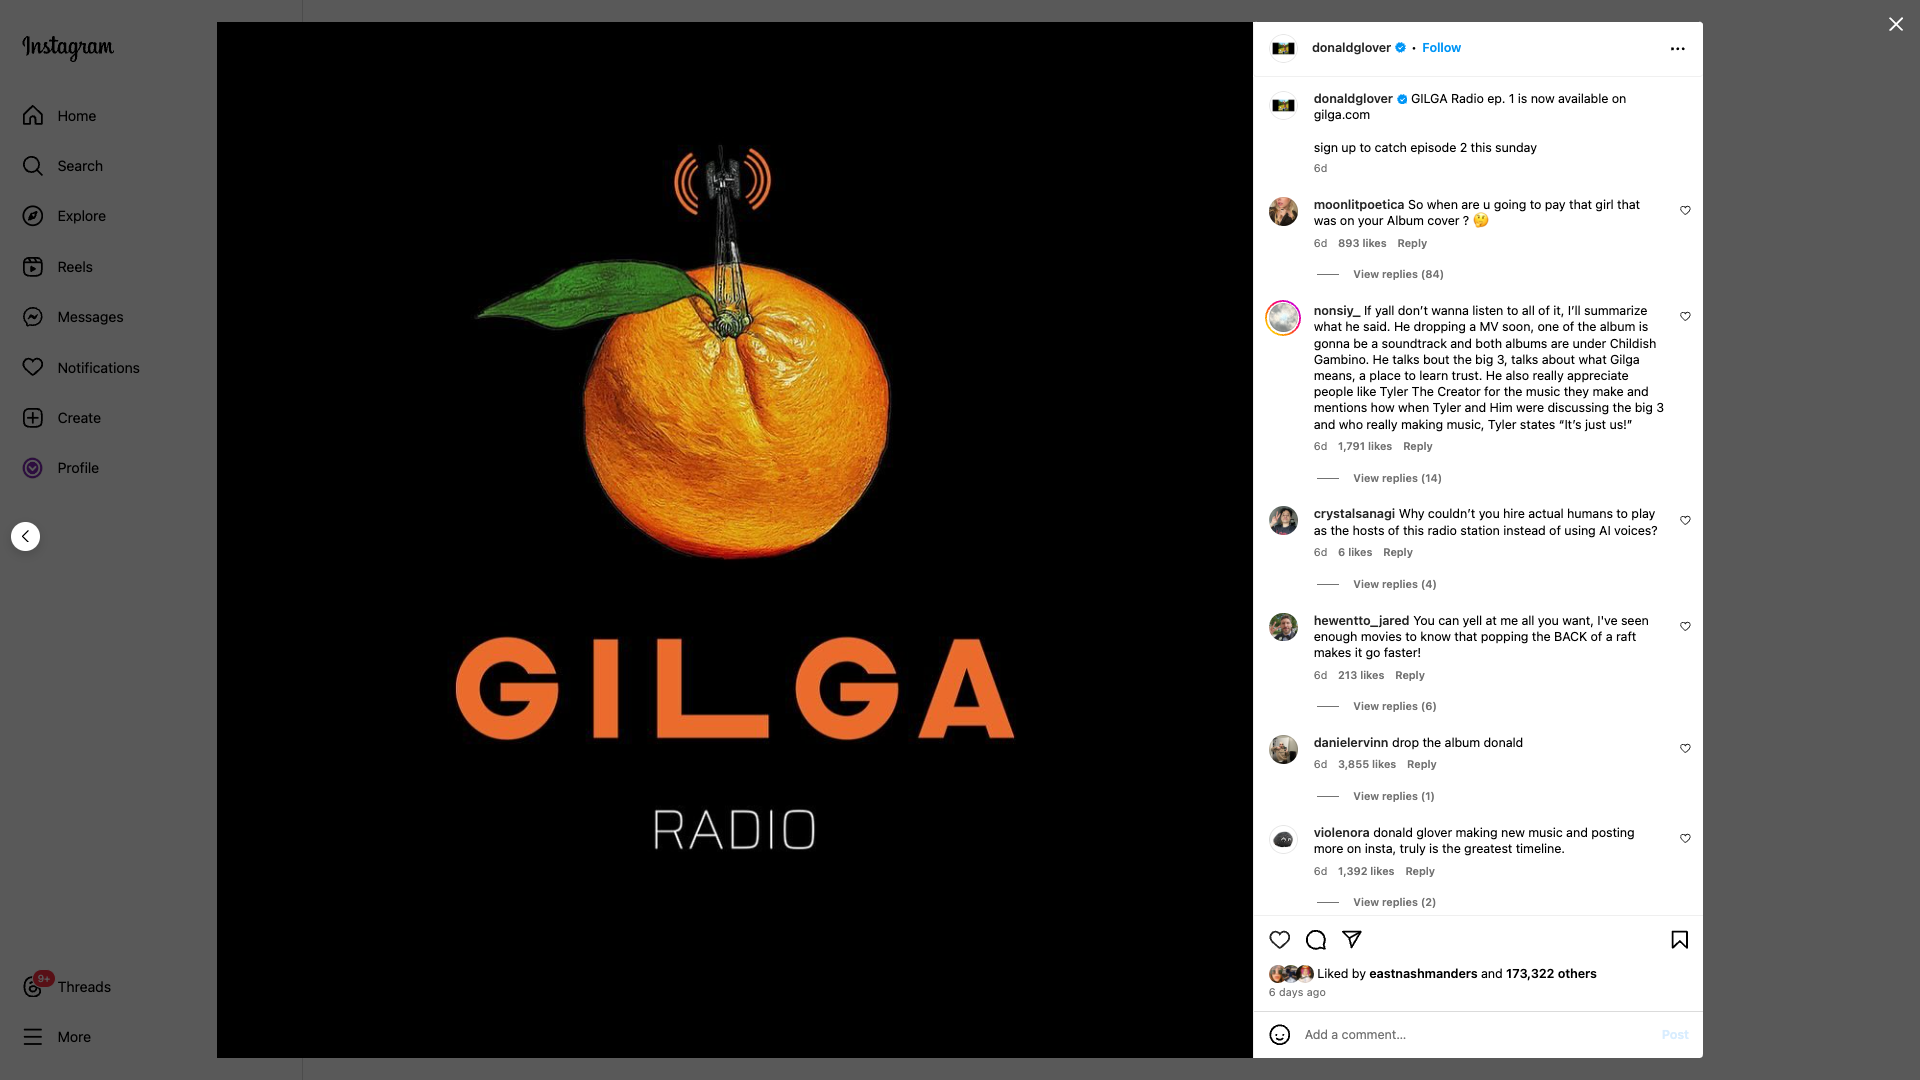 Donald Glover Gilga Radio Shopify